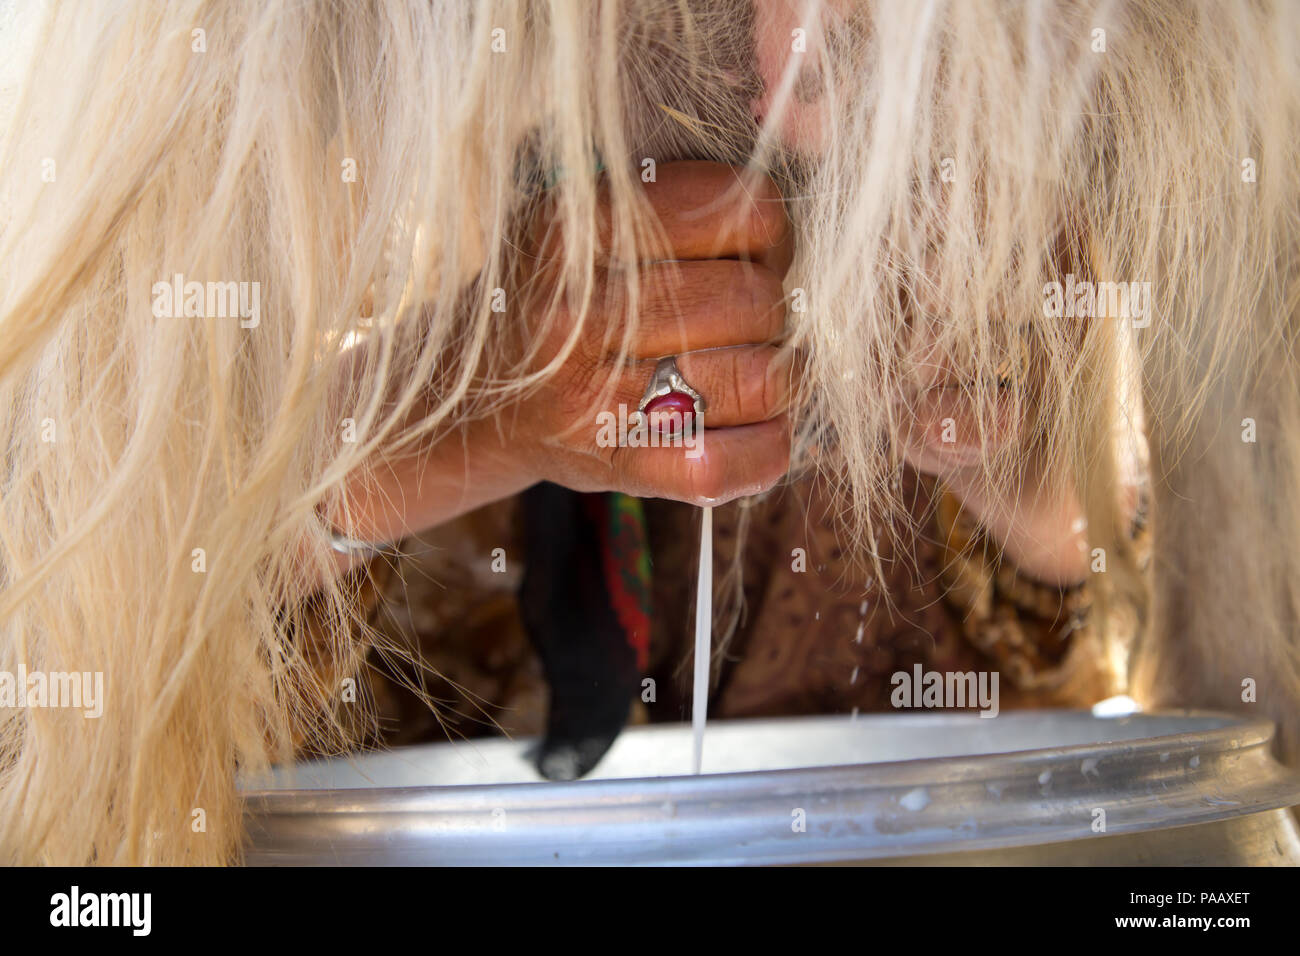 Hände von Qashqai wopman das Melken einer Ziege, Nomadenvolk, Iran Stockfoto